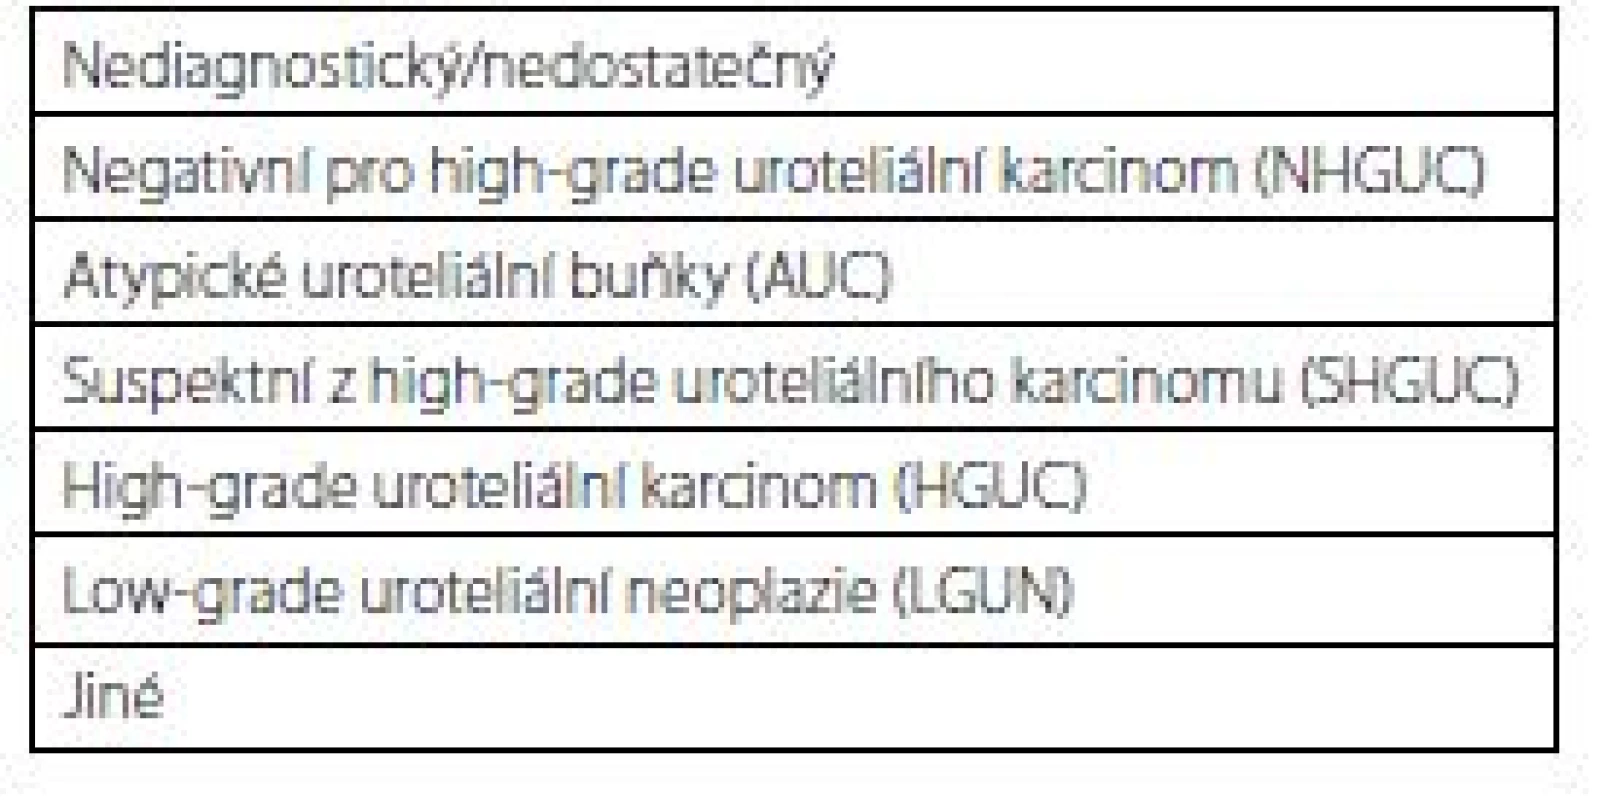 Pařížská klasifikace pro hodnocení močových
cytologií<br>
Tab. 1. The Paris system for reporting urinary cytology